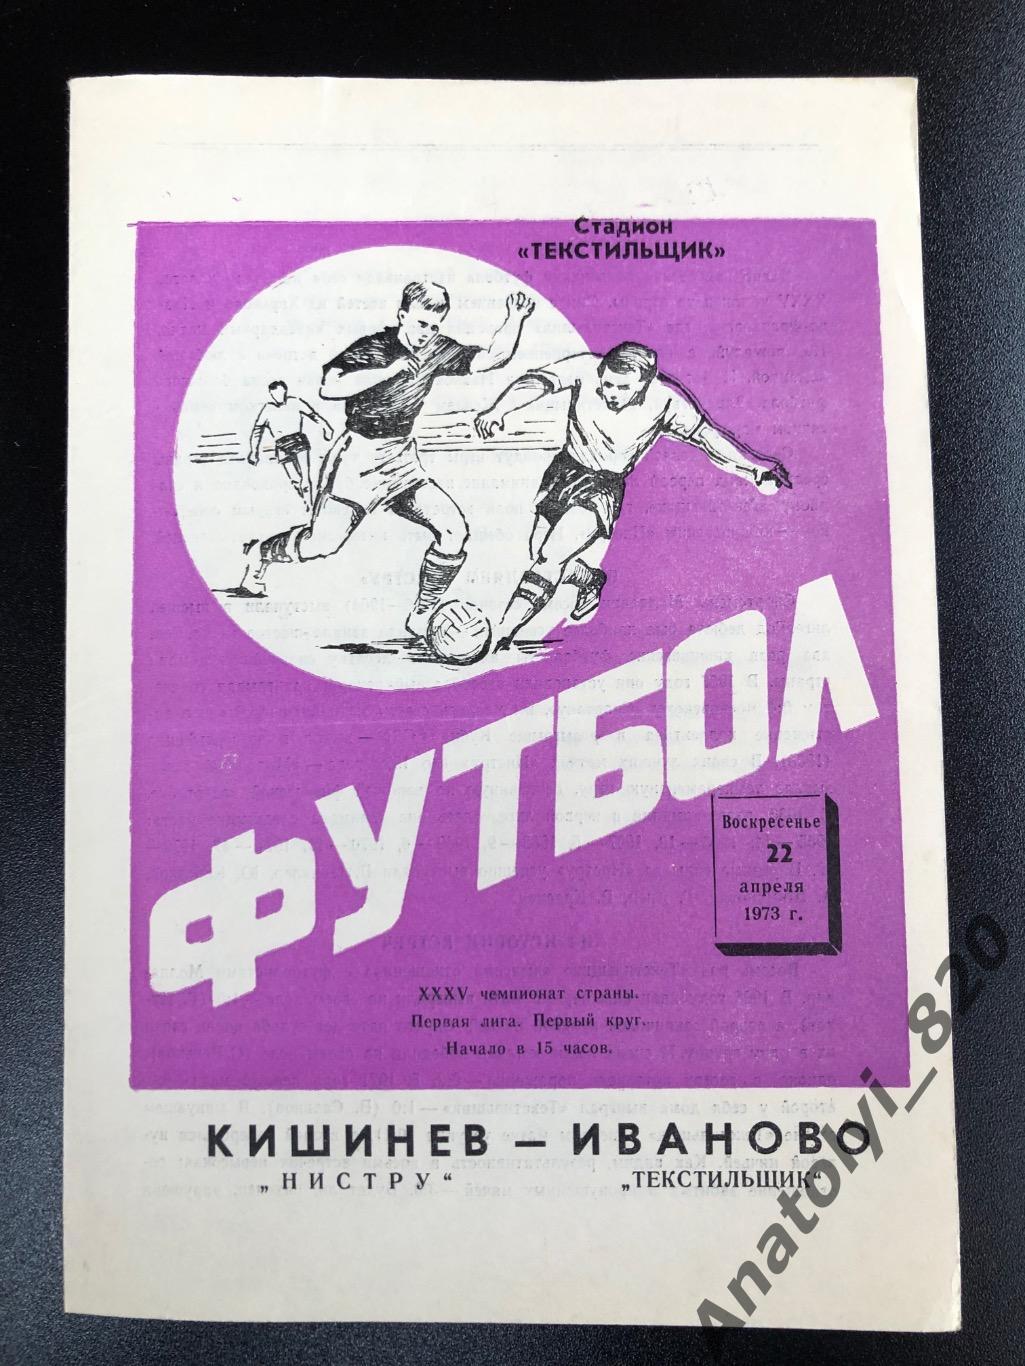 Текстильщик Иваново - Нистру Кишинёв 1973 год